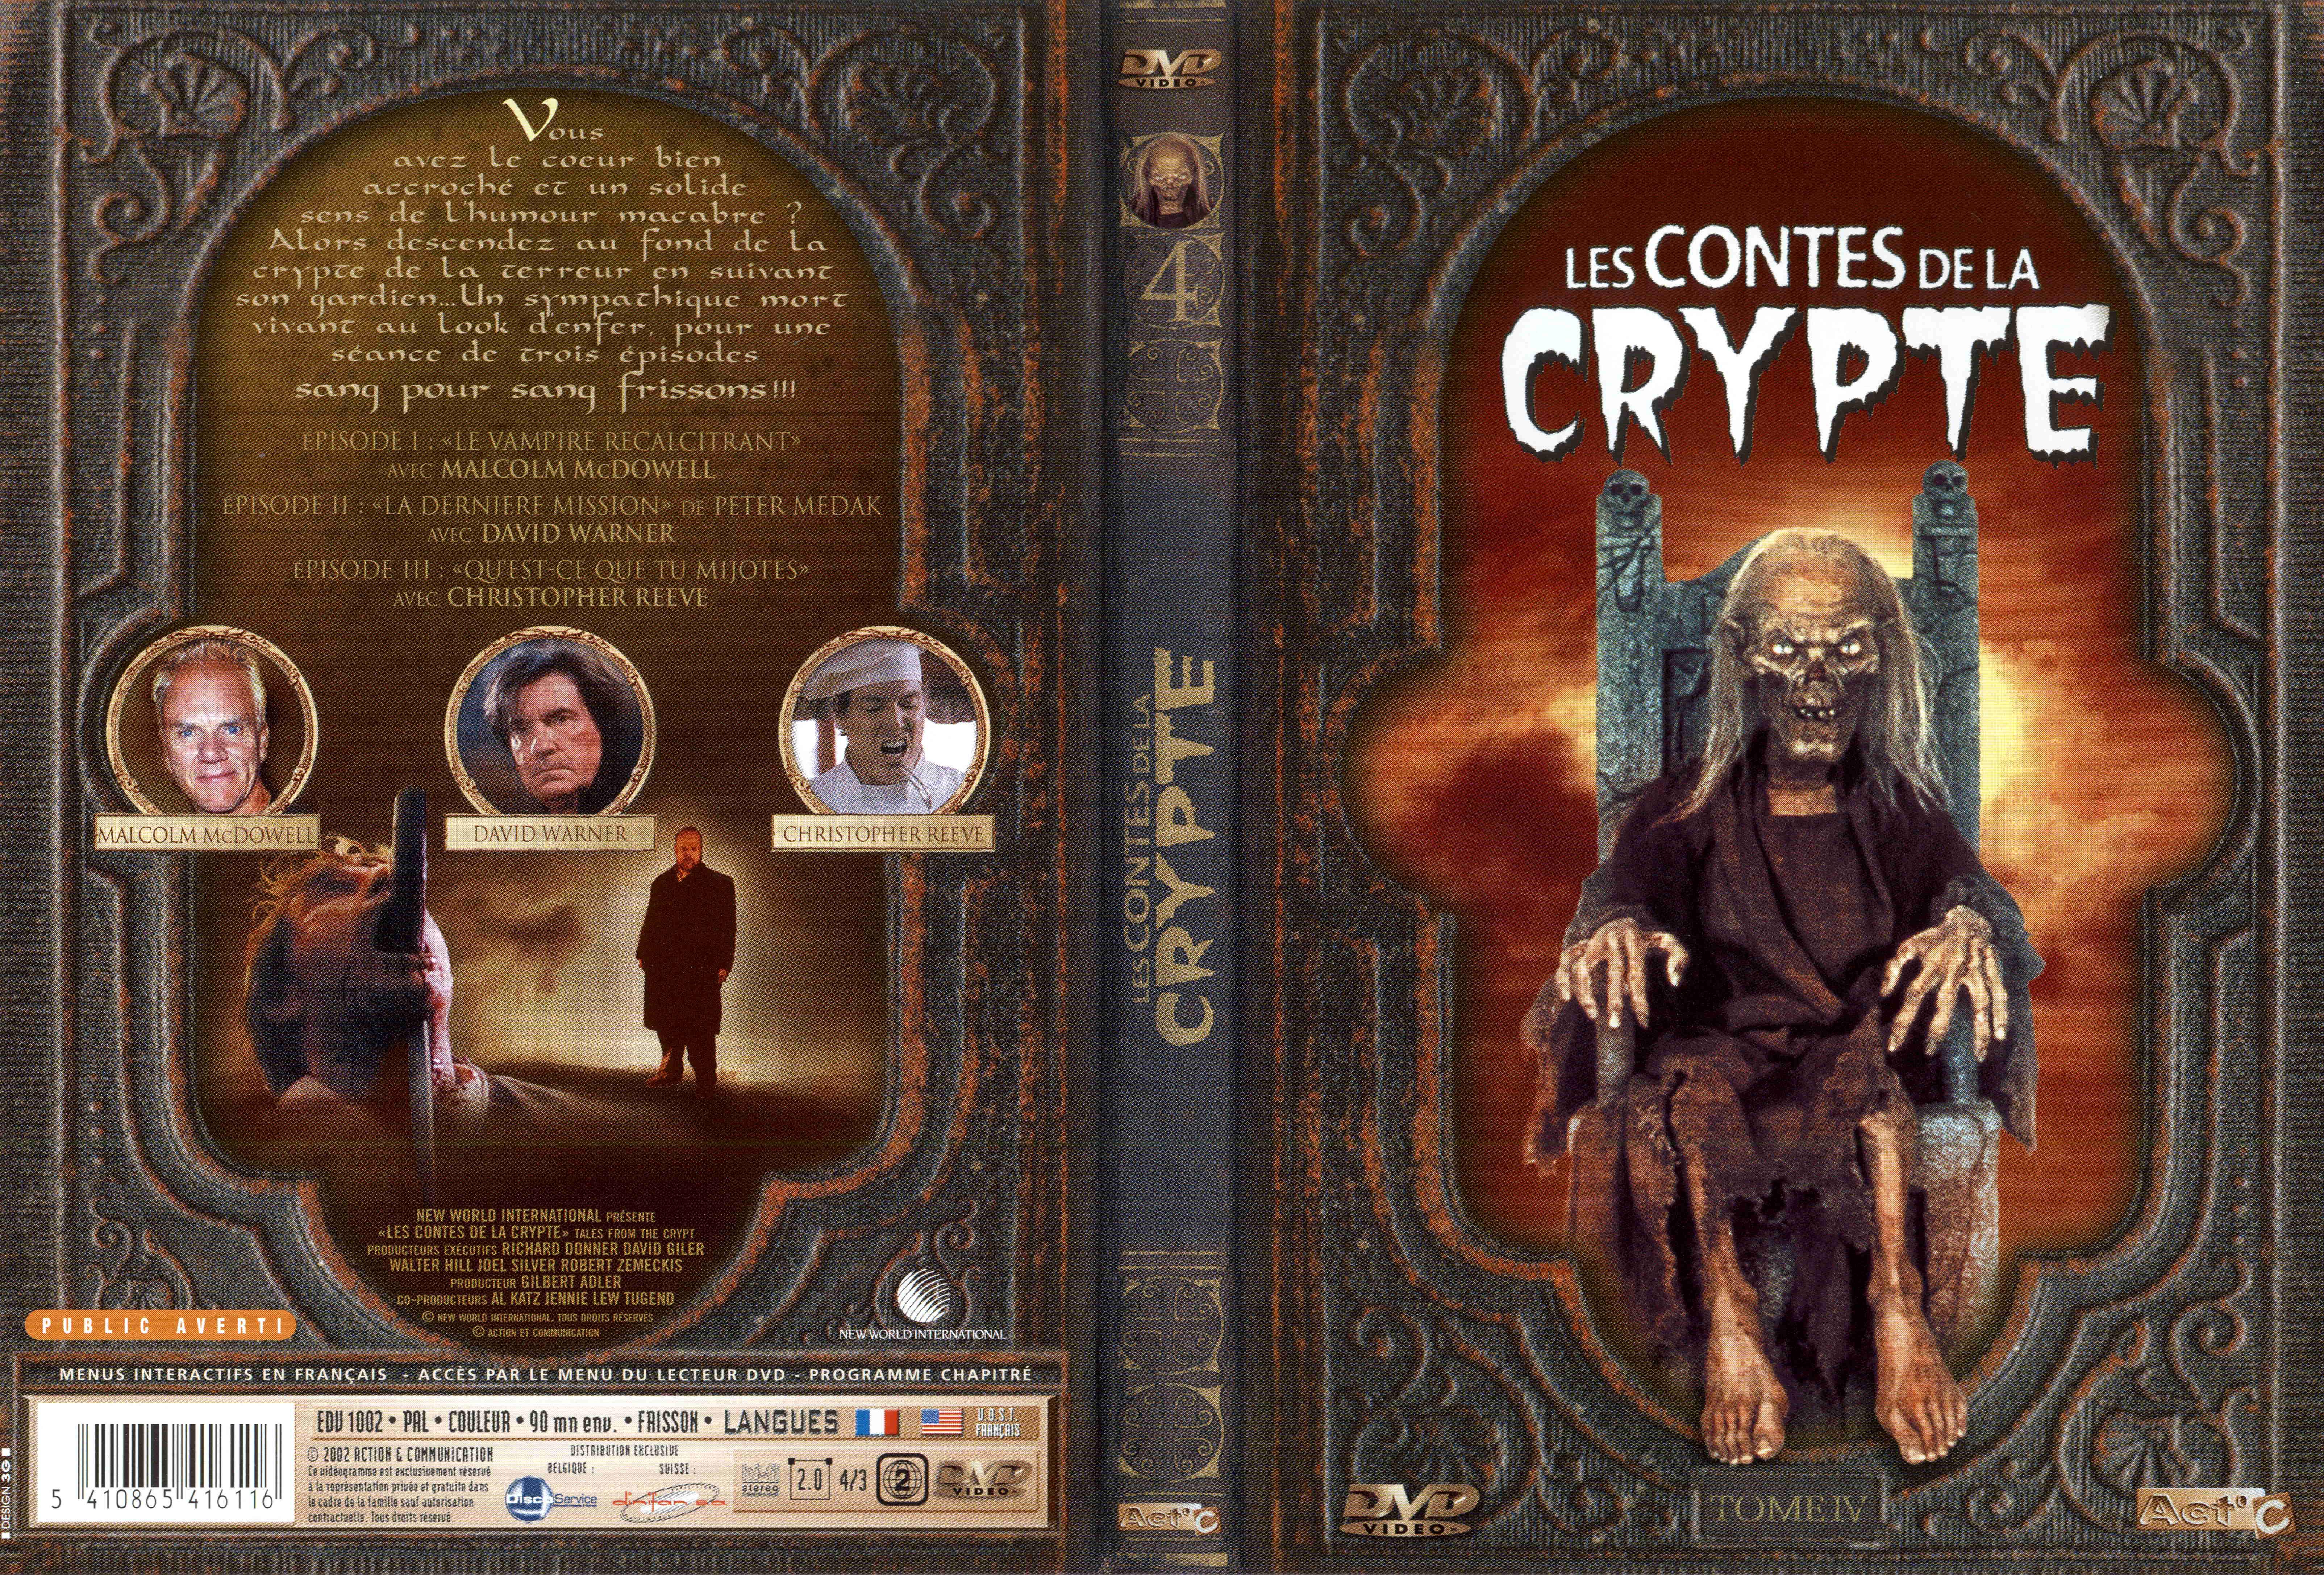 Jaquette DVD Les contes de la crypte vol 04 v2